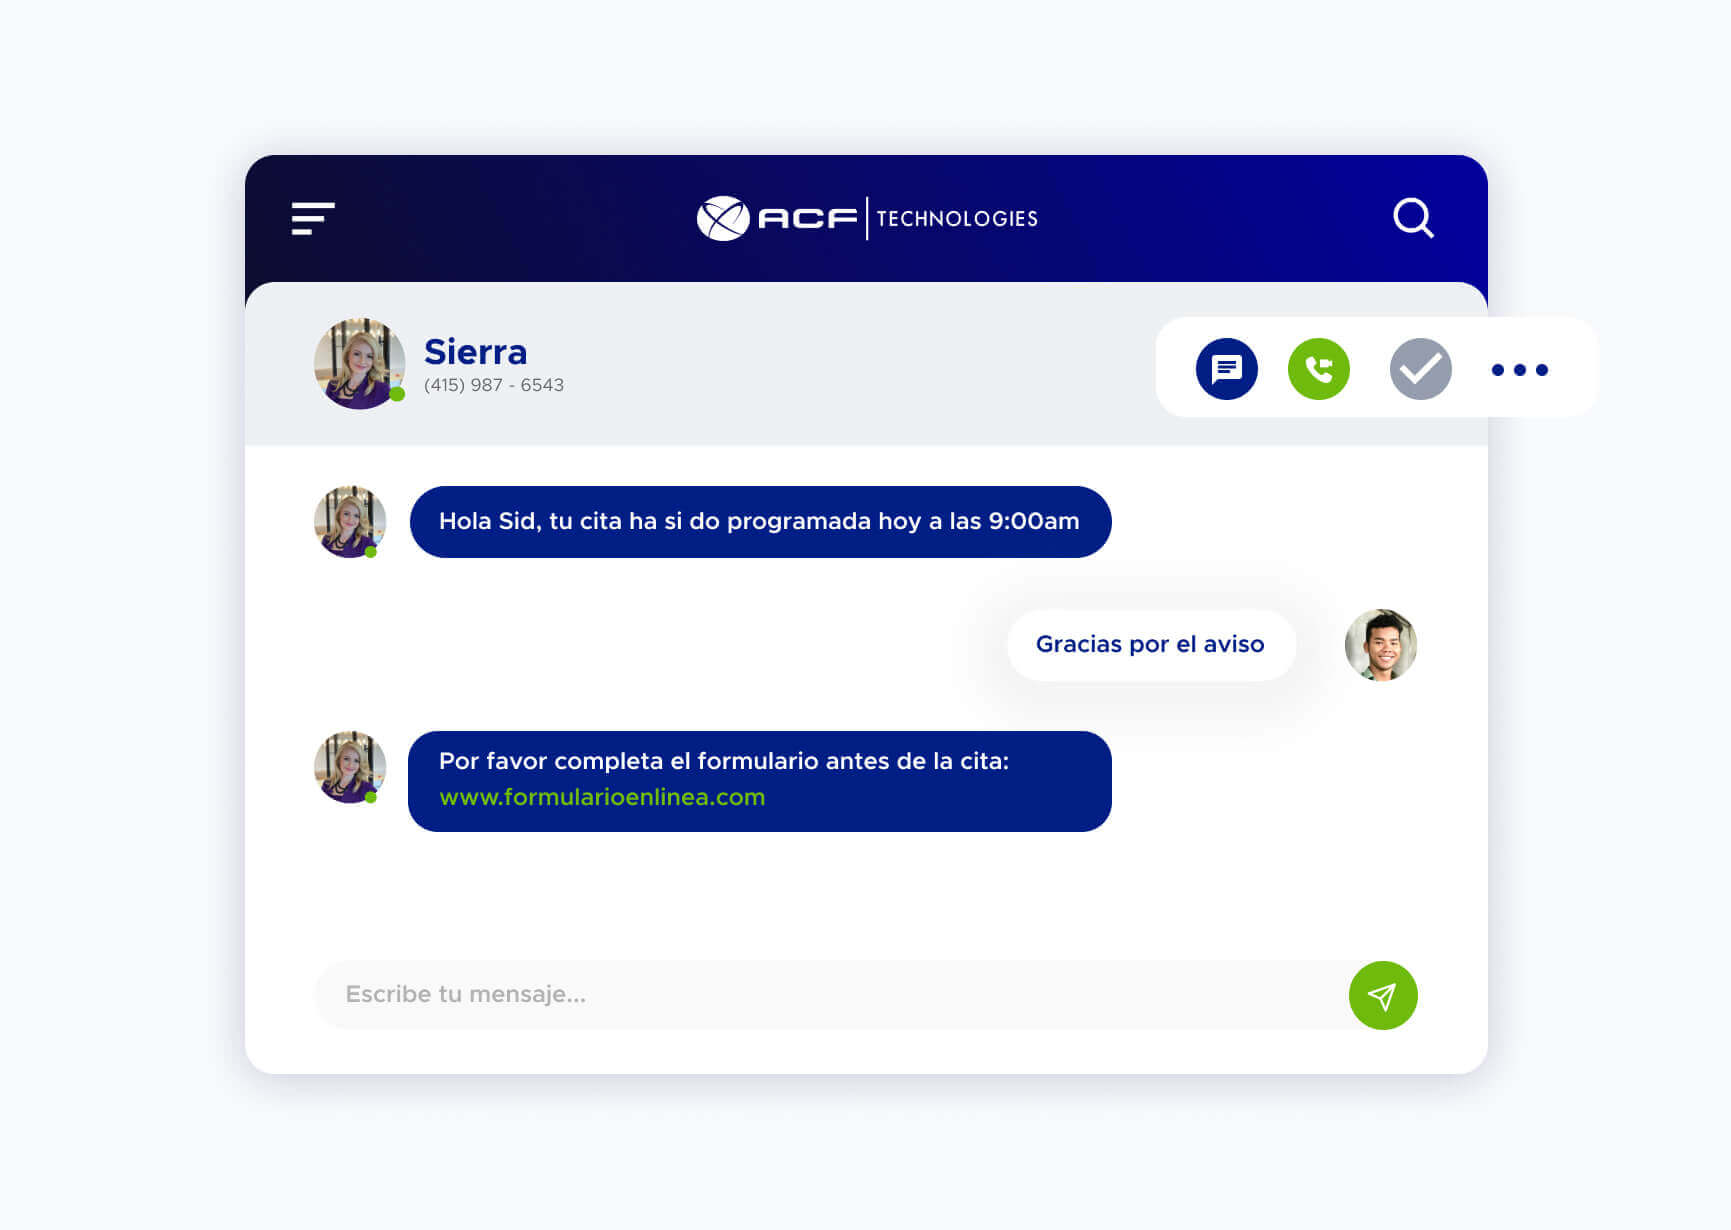 Simulación de una conversación utilizando la plataforma de ACF Technologies